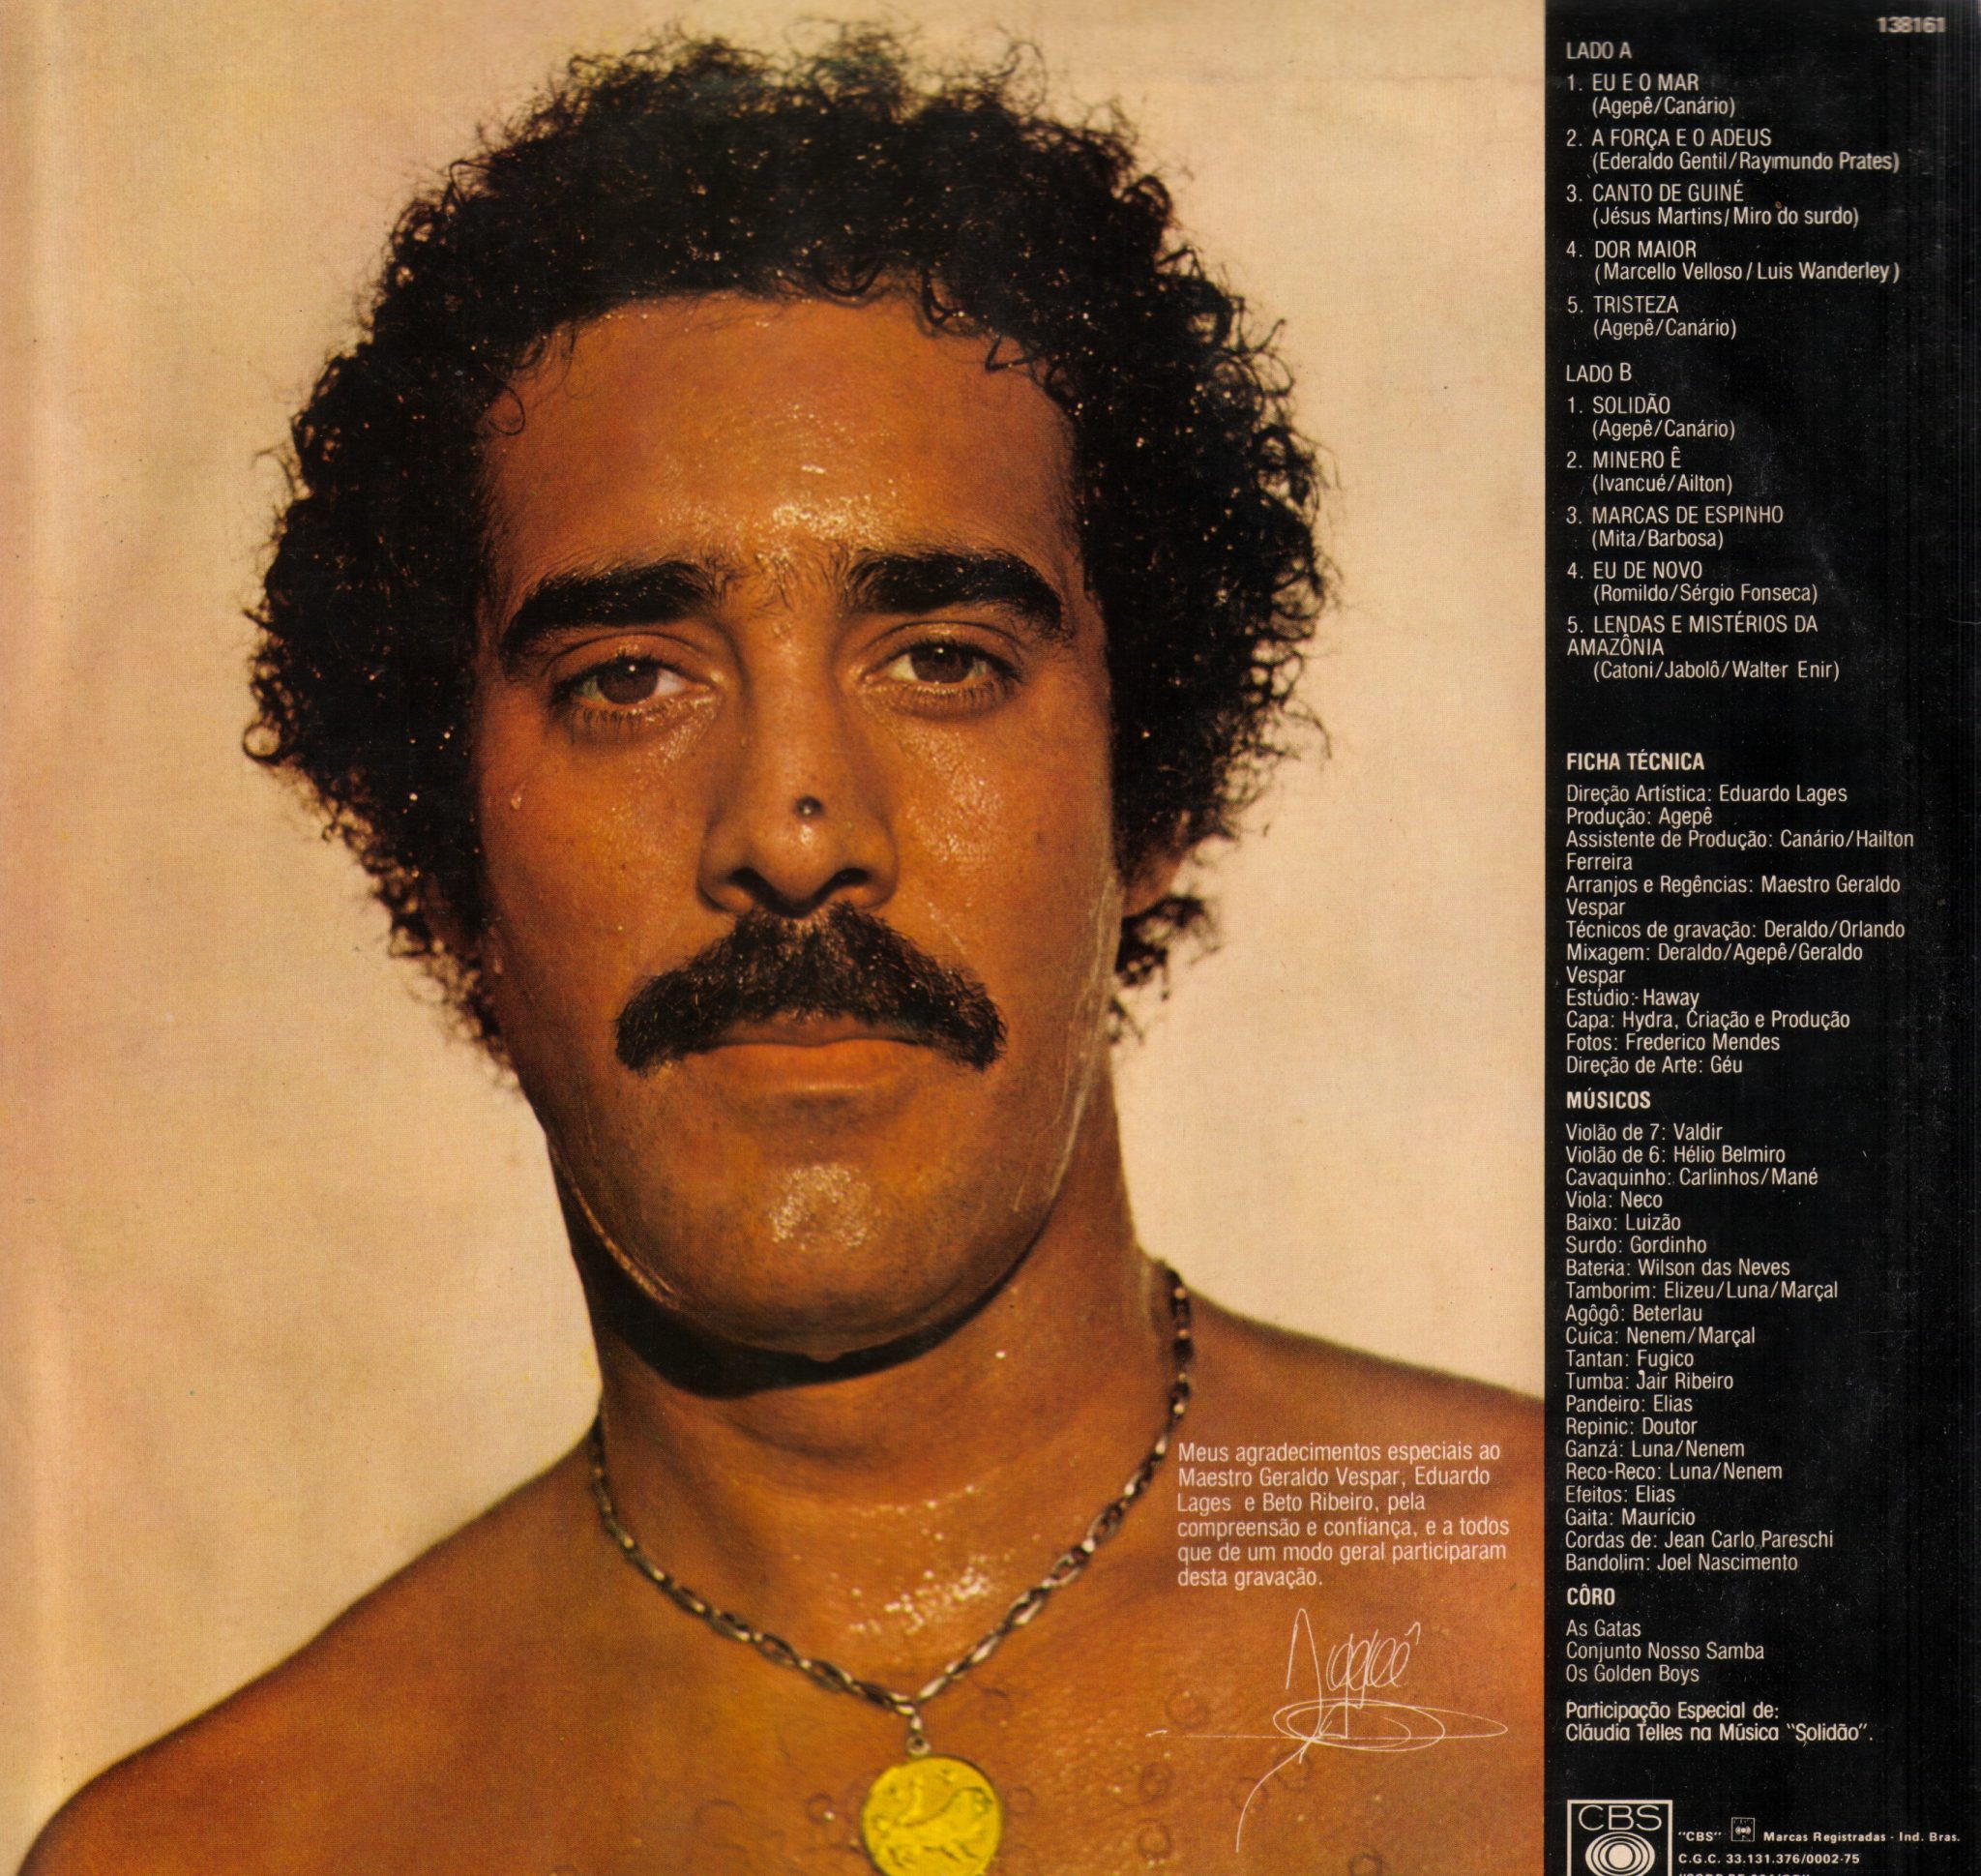 Composição de Ederaldo Gentil e Raymundo Prates gravada por Agepê no disco "Agepê" (1979).